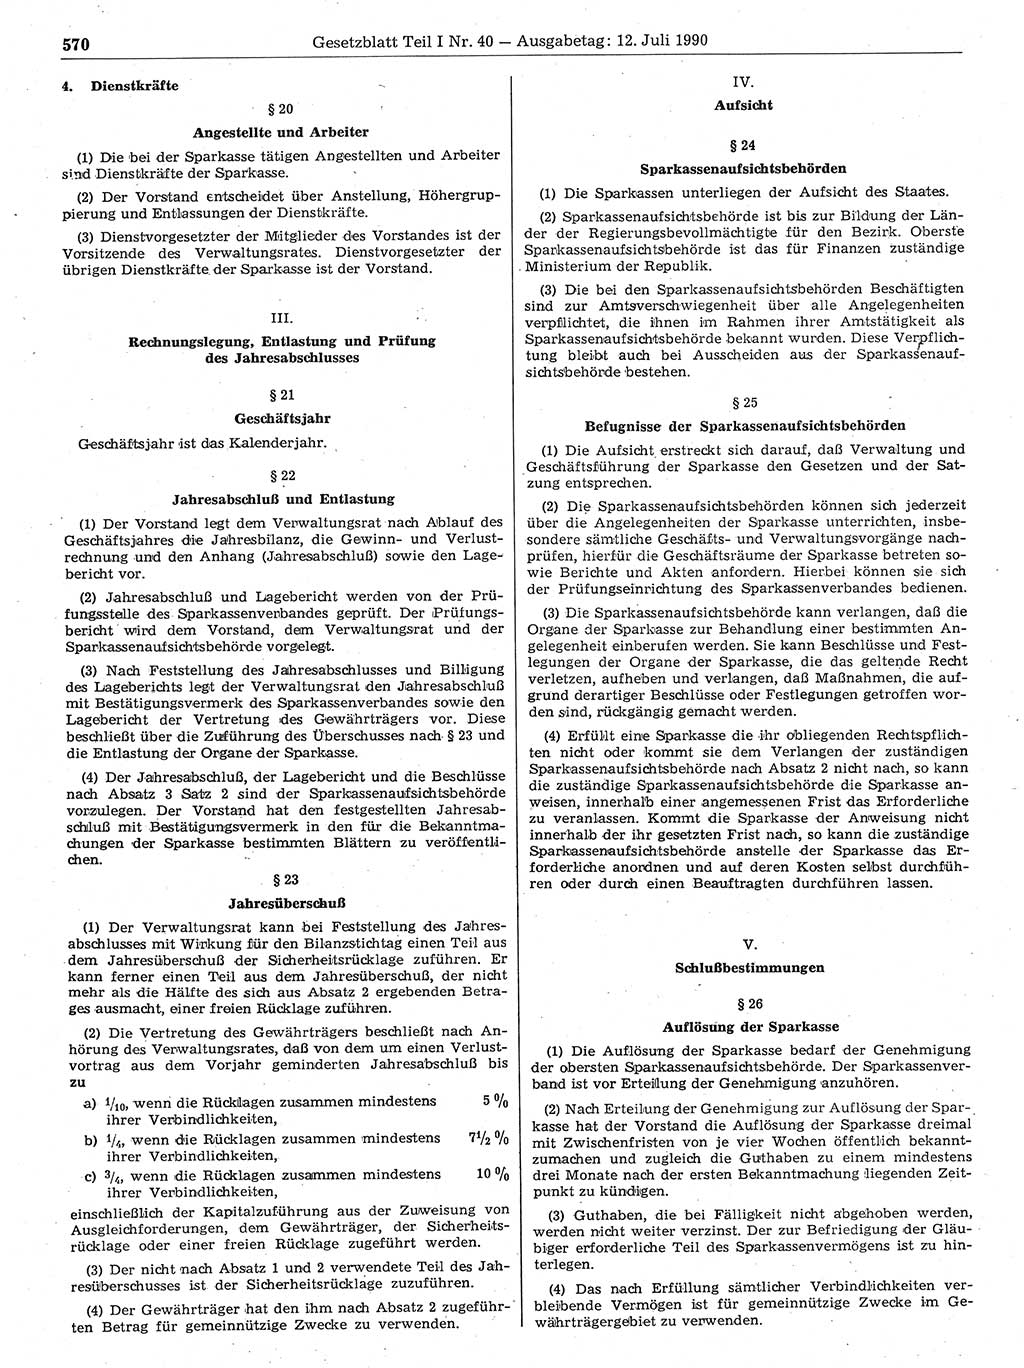 Gesetzblatt (GBl.) der Deutschen Demokratischen Republik (DDR) Teil Ⅰ 1990, Seite 570 (GBl. DDR Ⅰ 1990, S. 570)